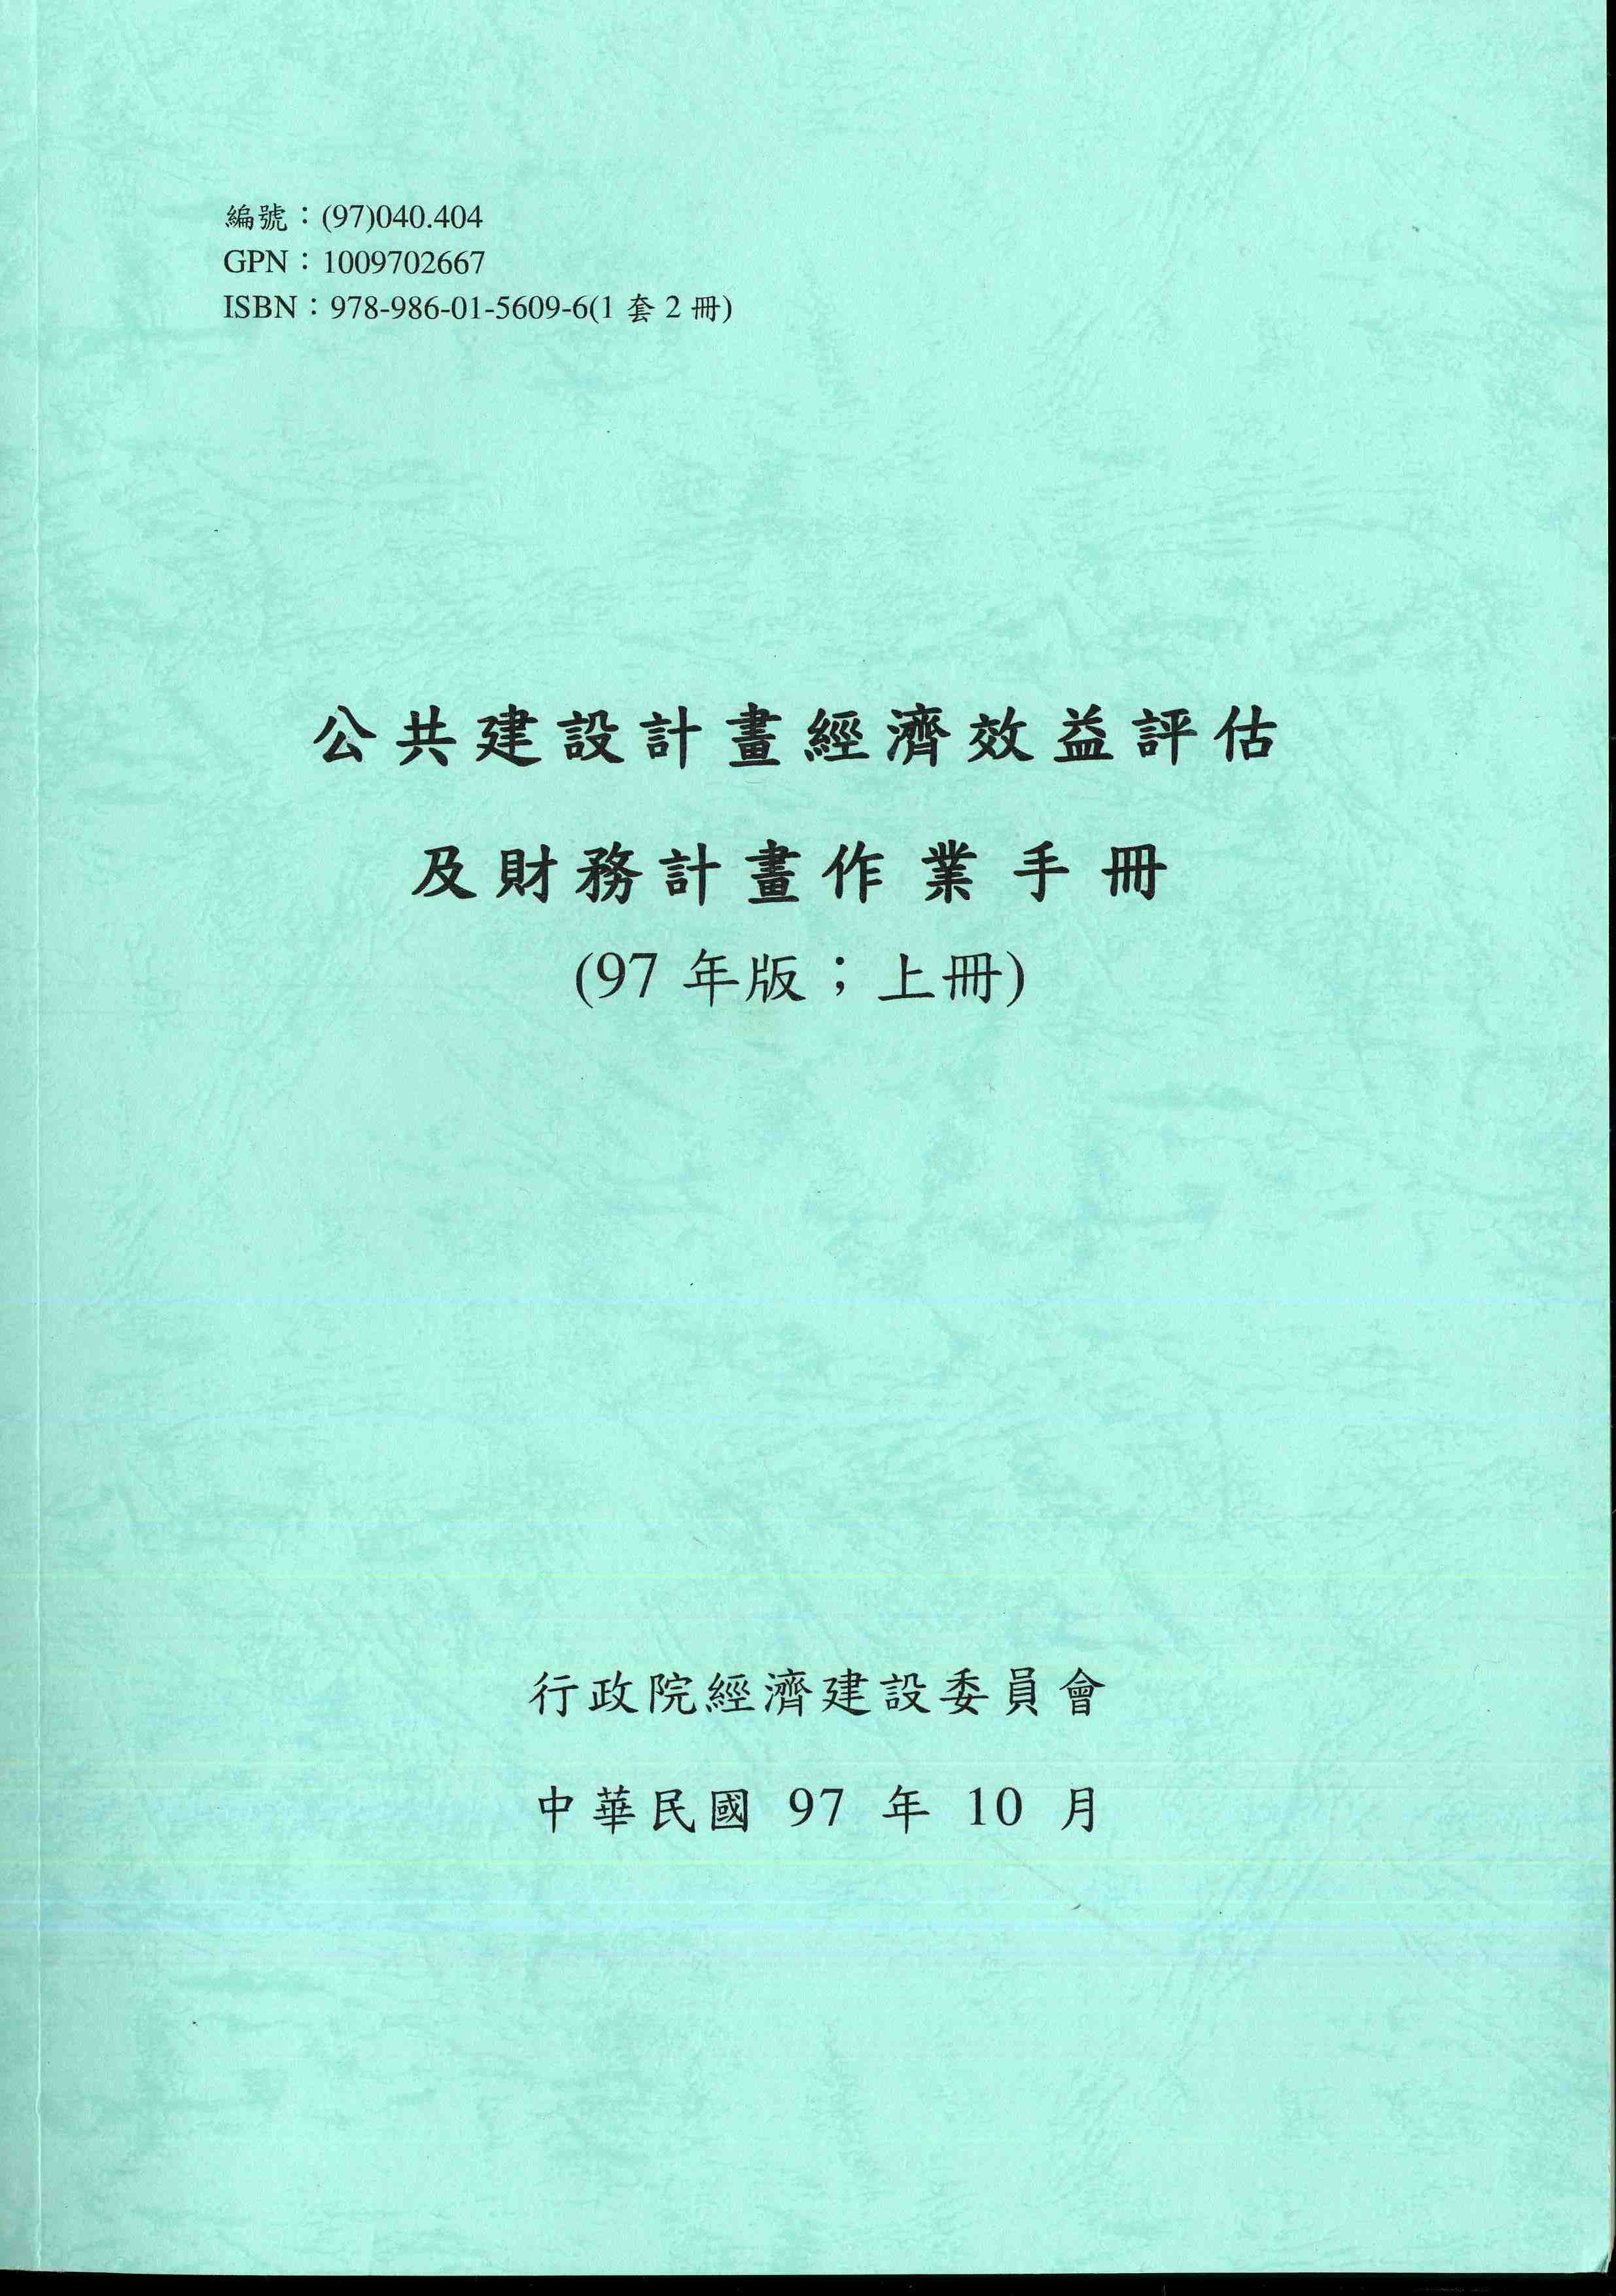 公共建設計畫經濟效益評估及財務計畫作業手冊(97年版)